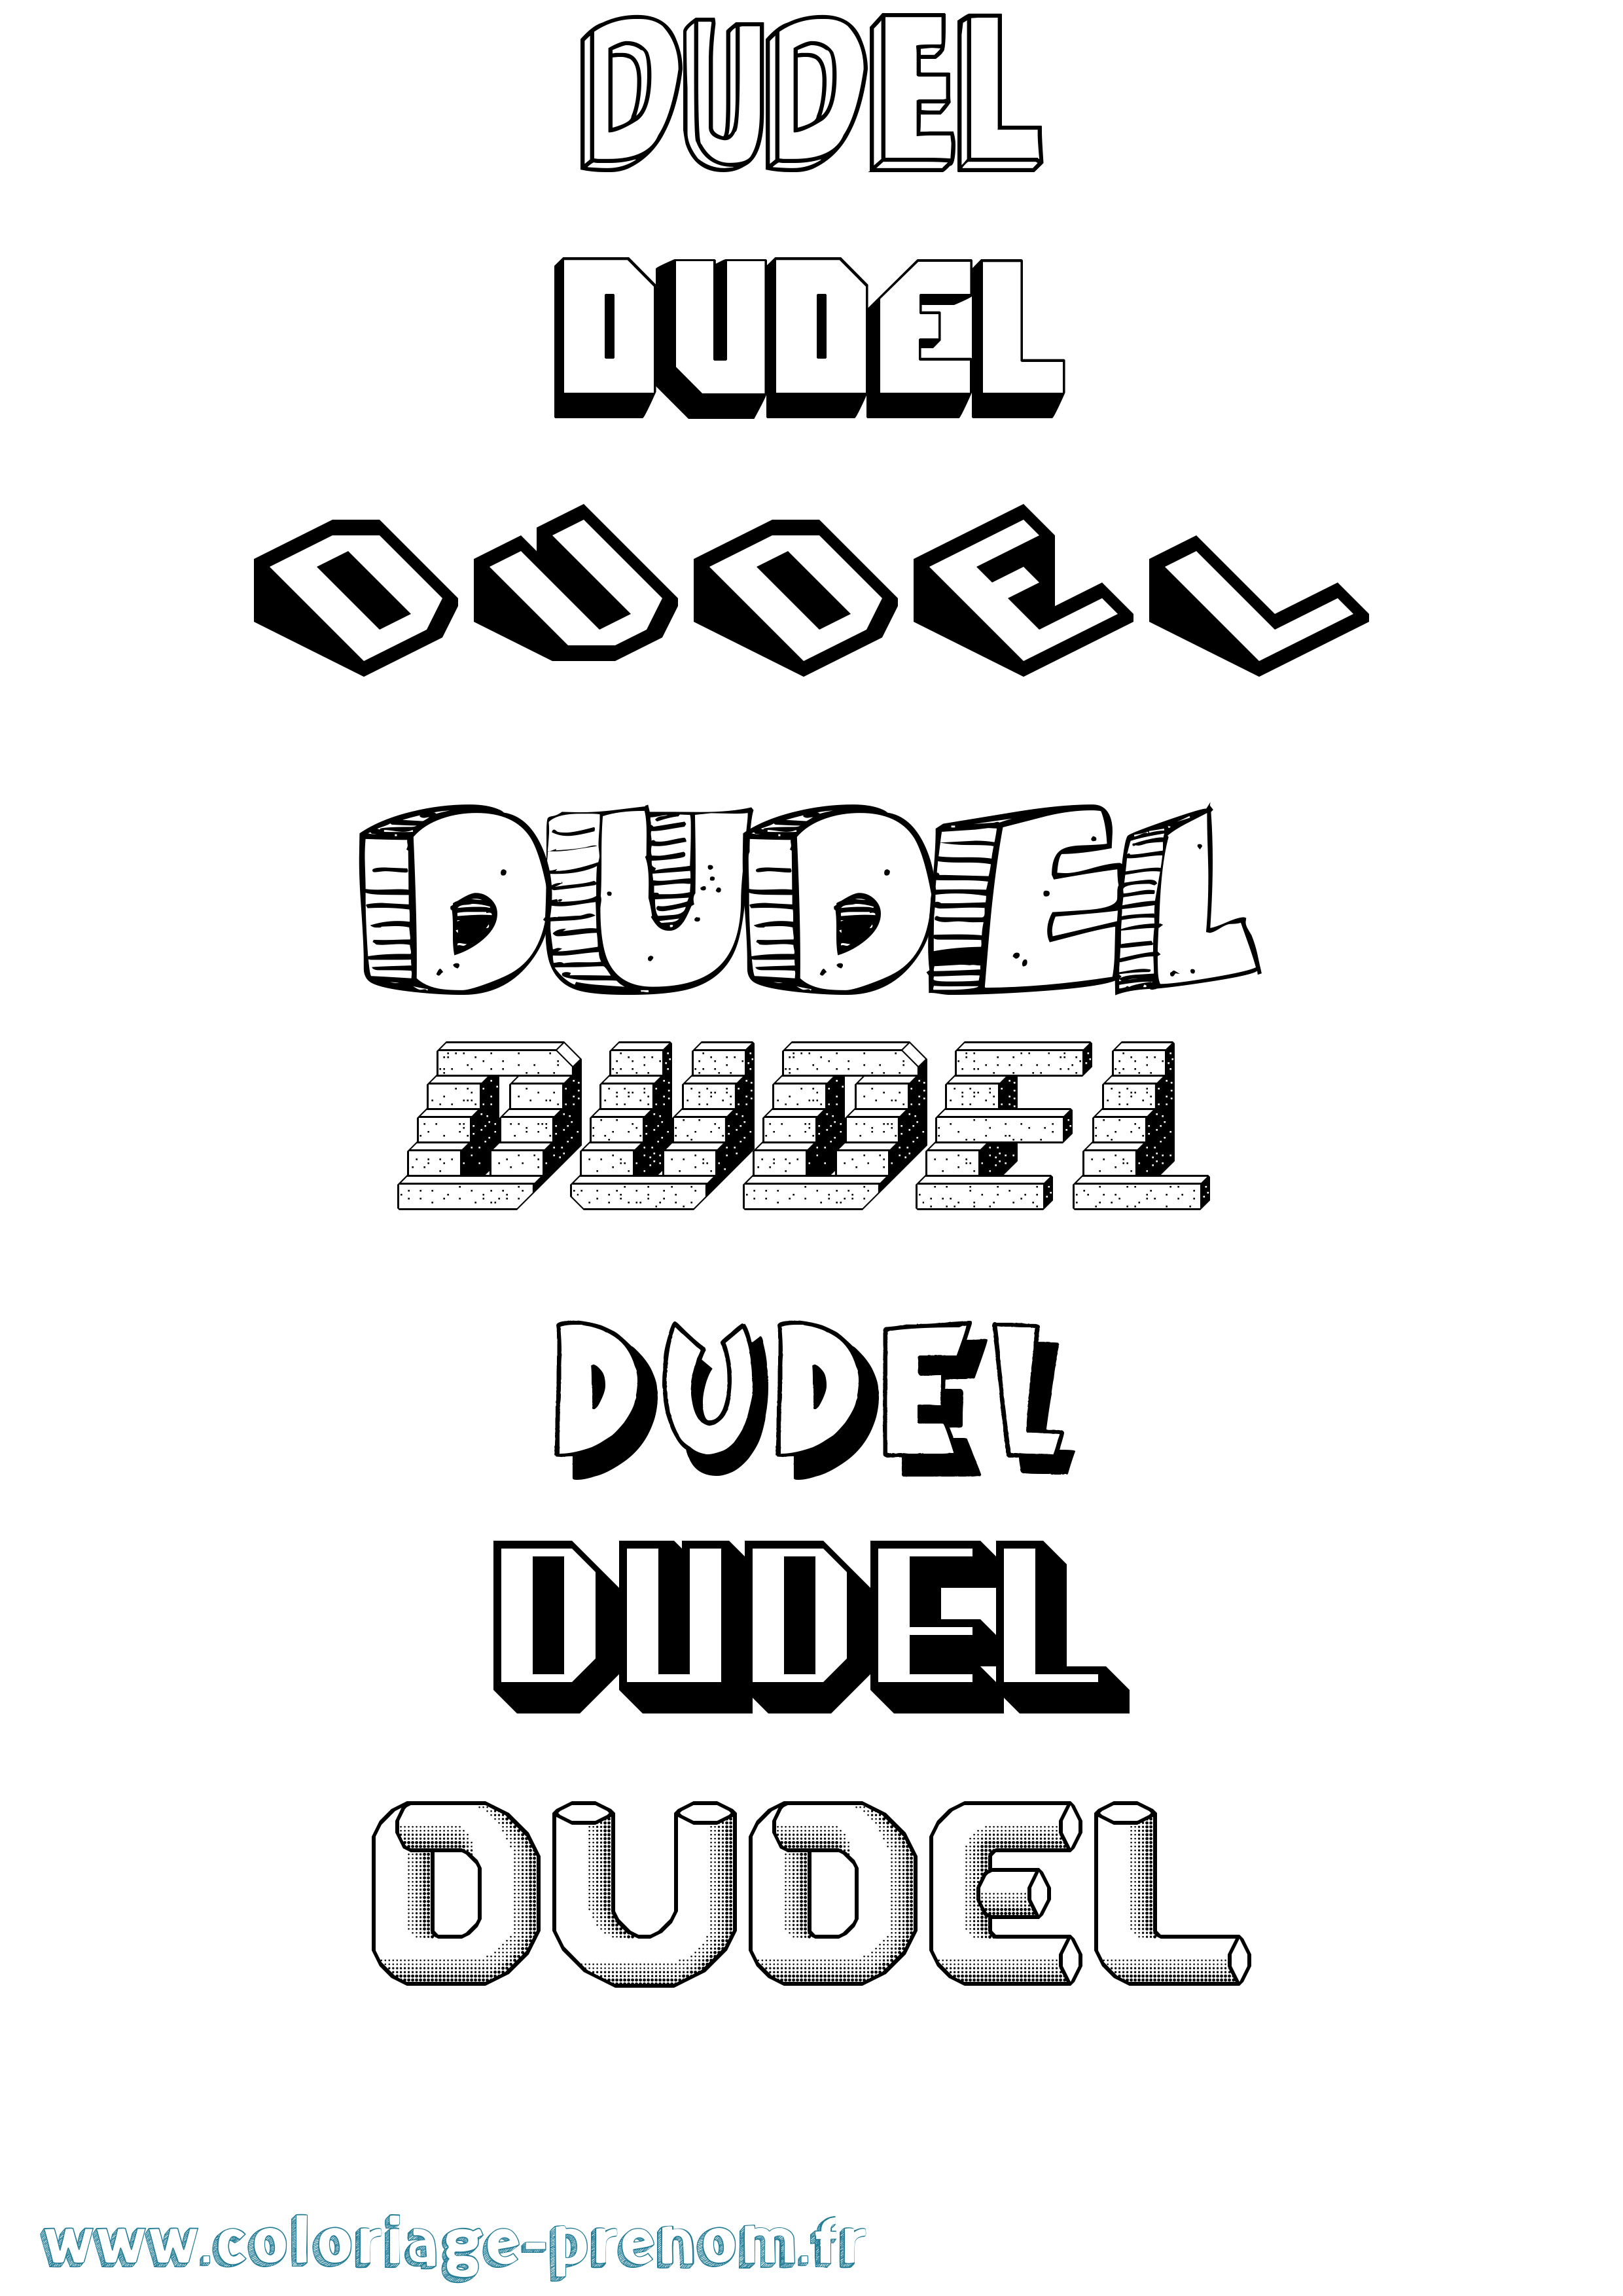 Coloriage prénom Dudel Effet 3D